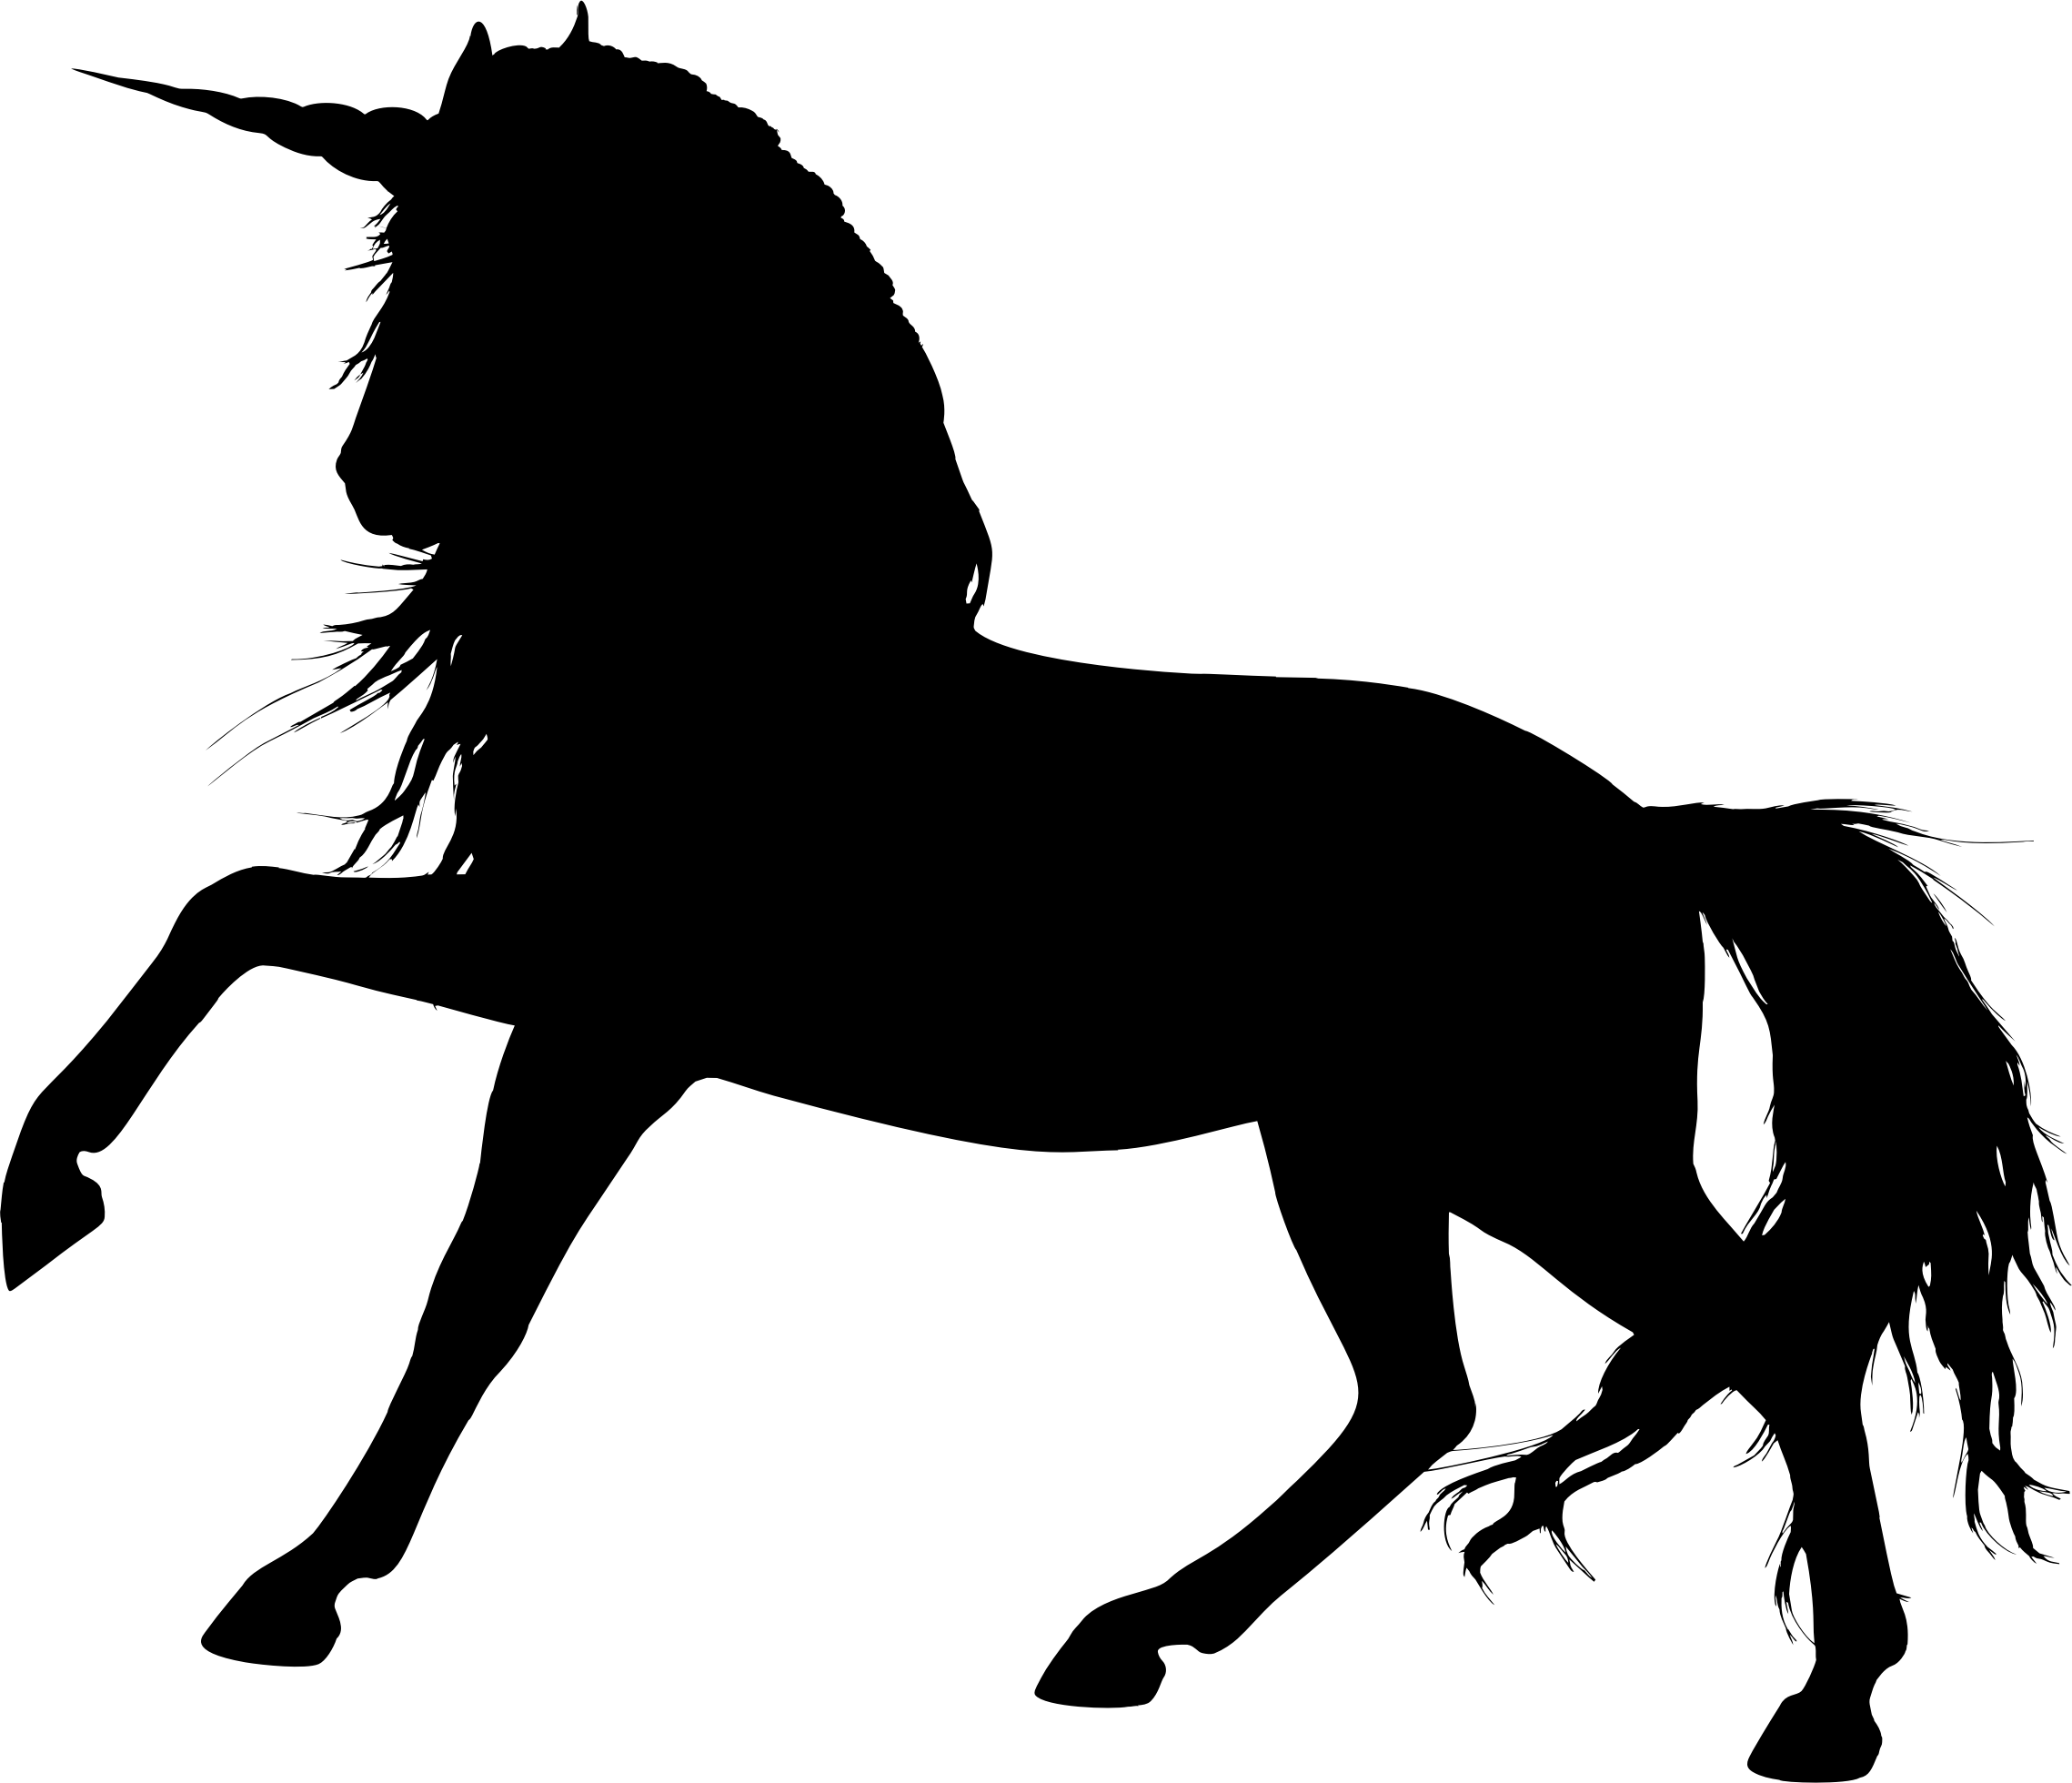 Medium Image - Horse Black Transparent Background (2278x1960)